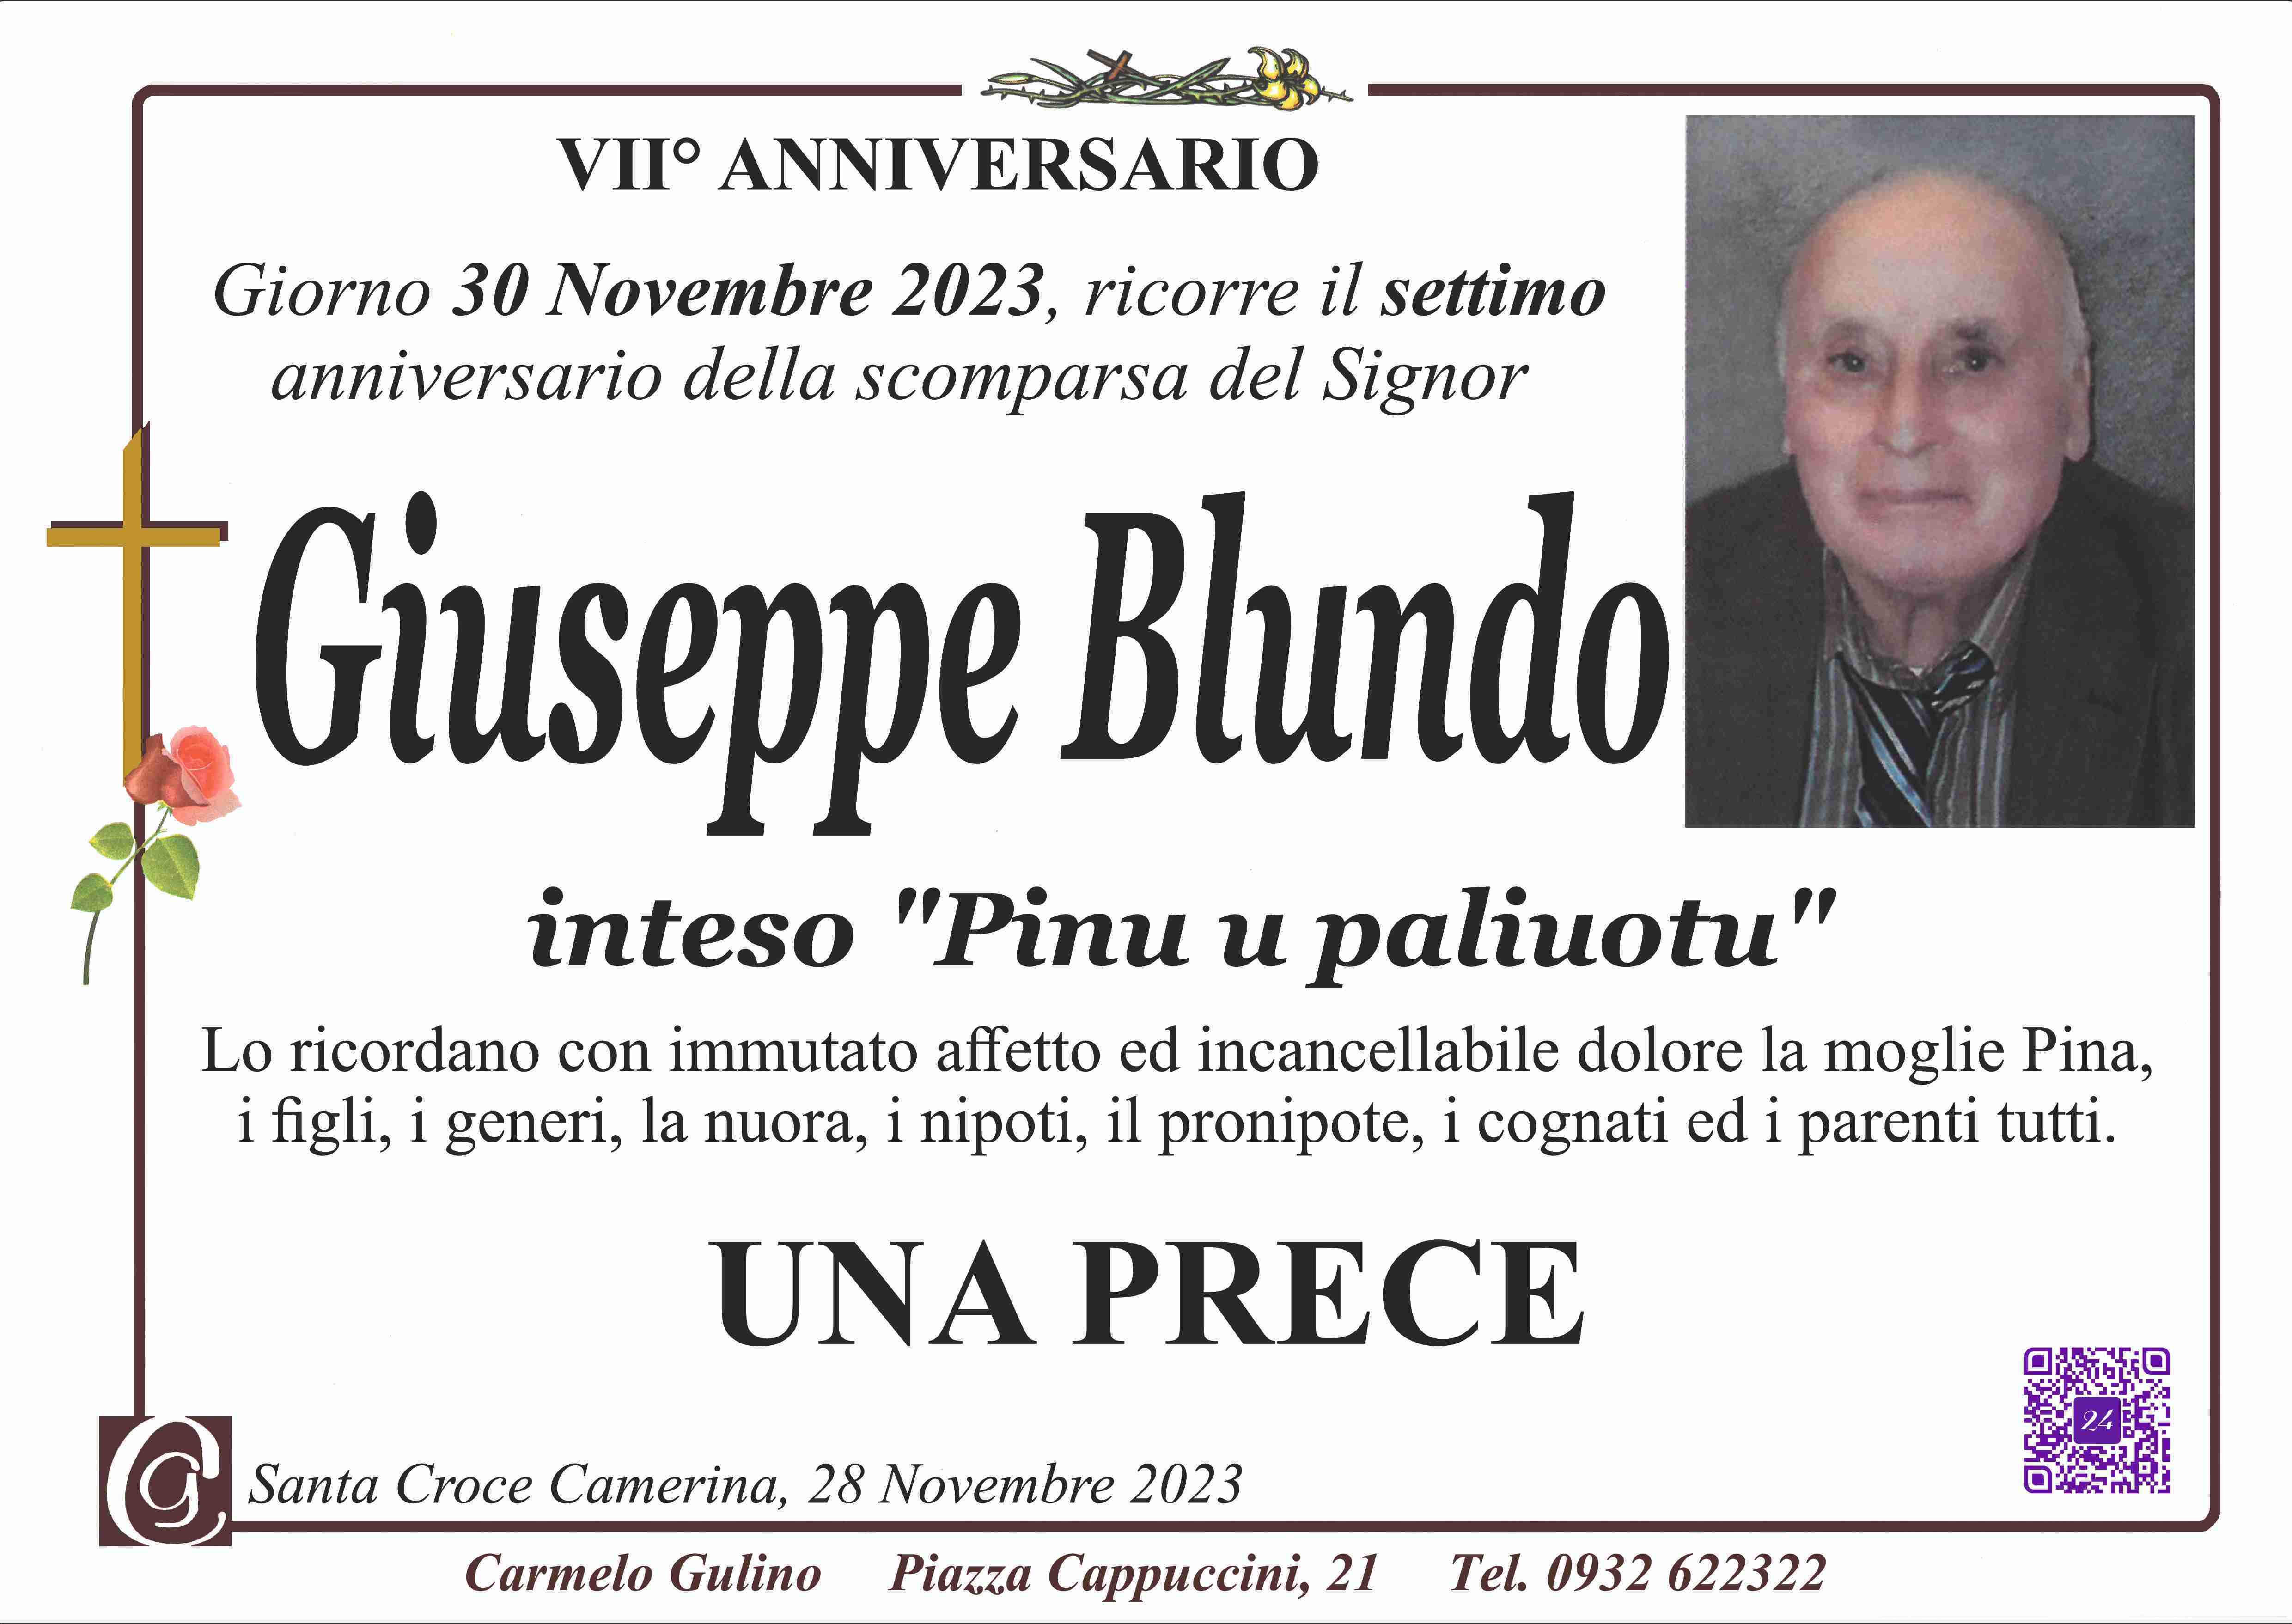 Giuseppe Blundo